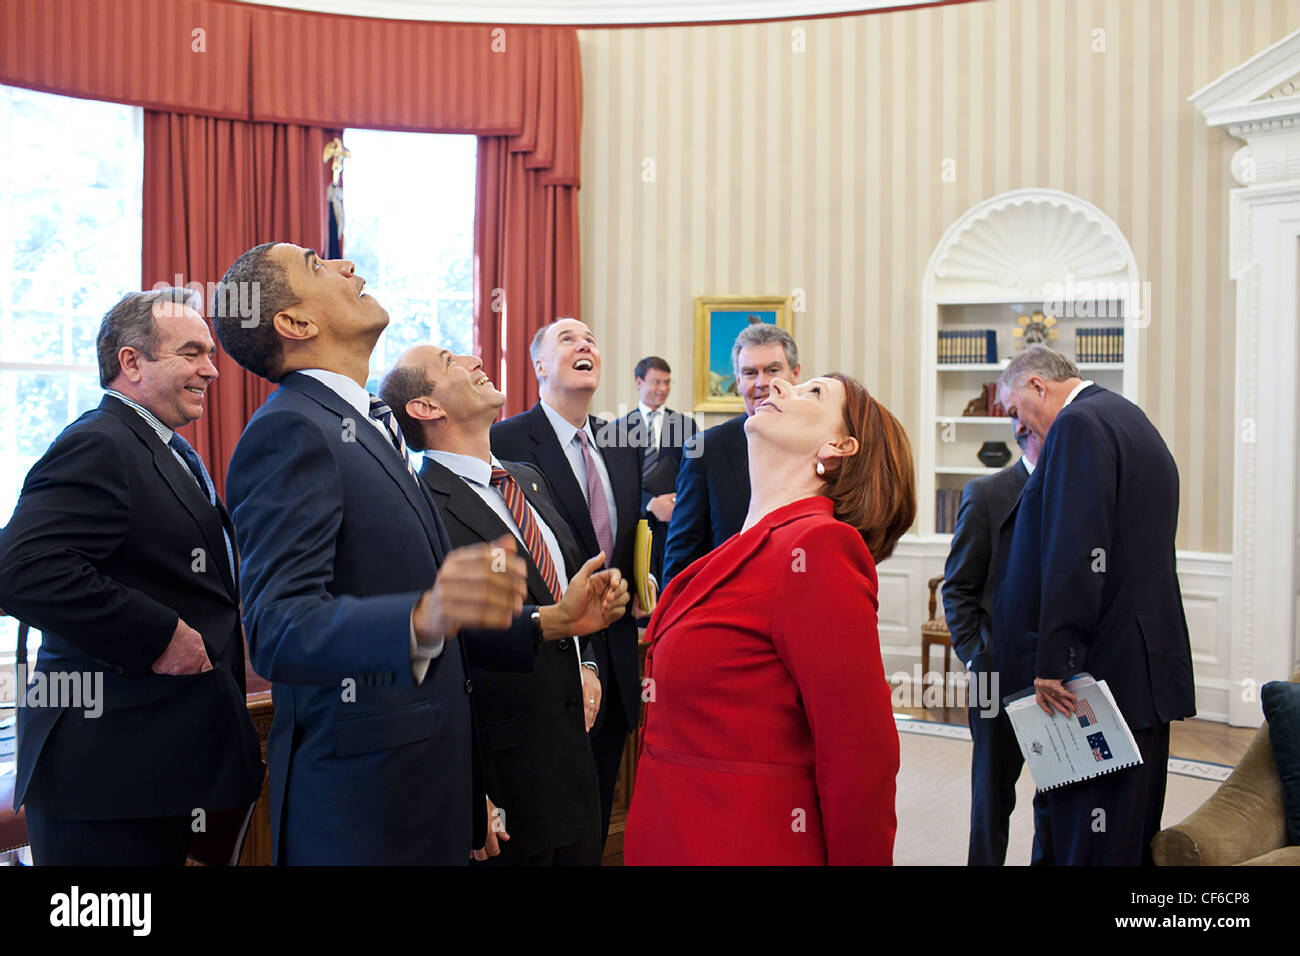 Präsident Barack Obama, Premierminister Julia Gillard von Australien und Mitglieder der australischen und amerikanischen Delegationen Nachschlagen an der Präsidentschaftswahl Dichtung in das Oval Office-Decke nach ihren bilateralen Treffen 7. März 2011 in Washington, DC. Stockfoto